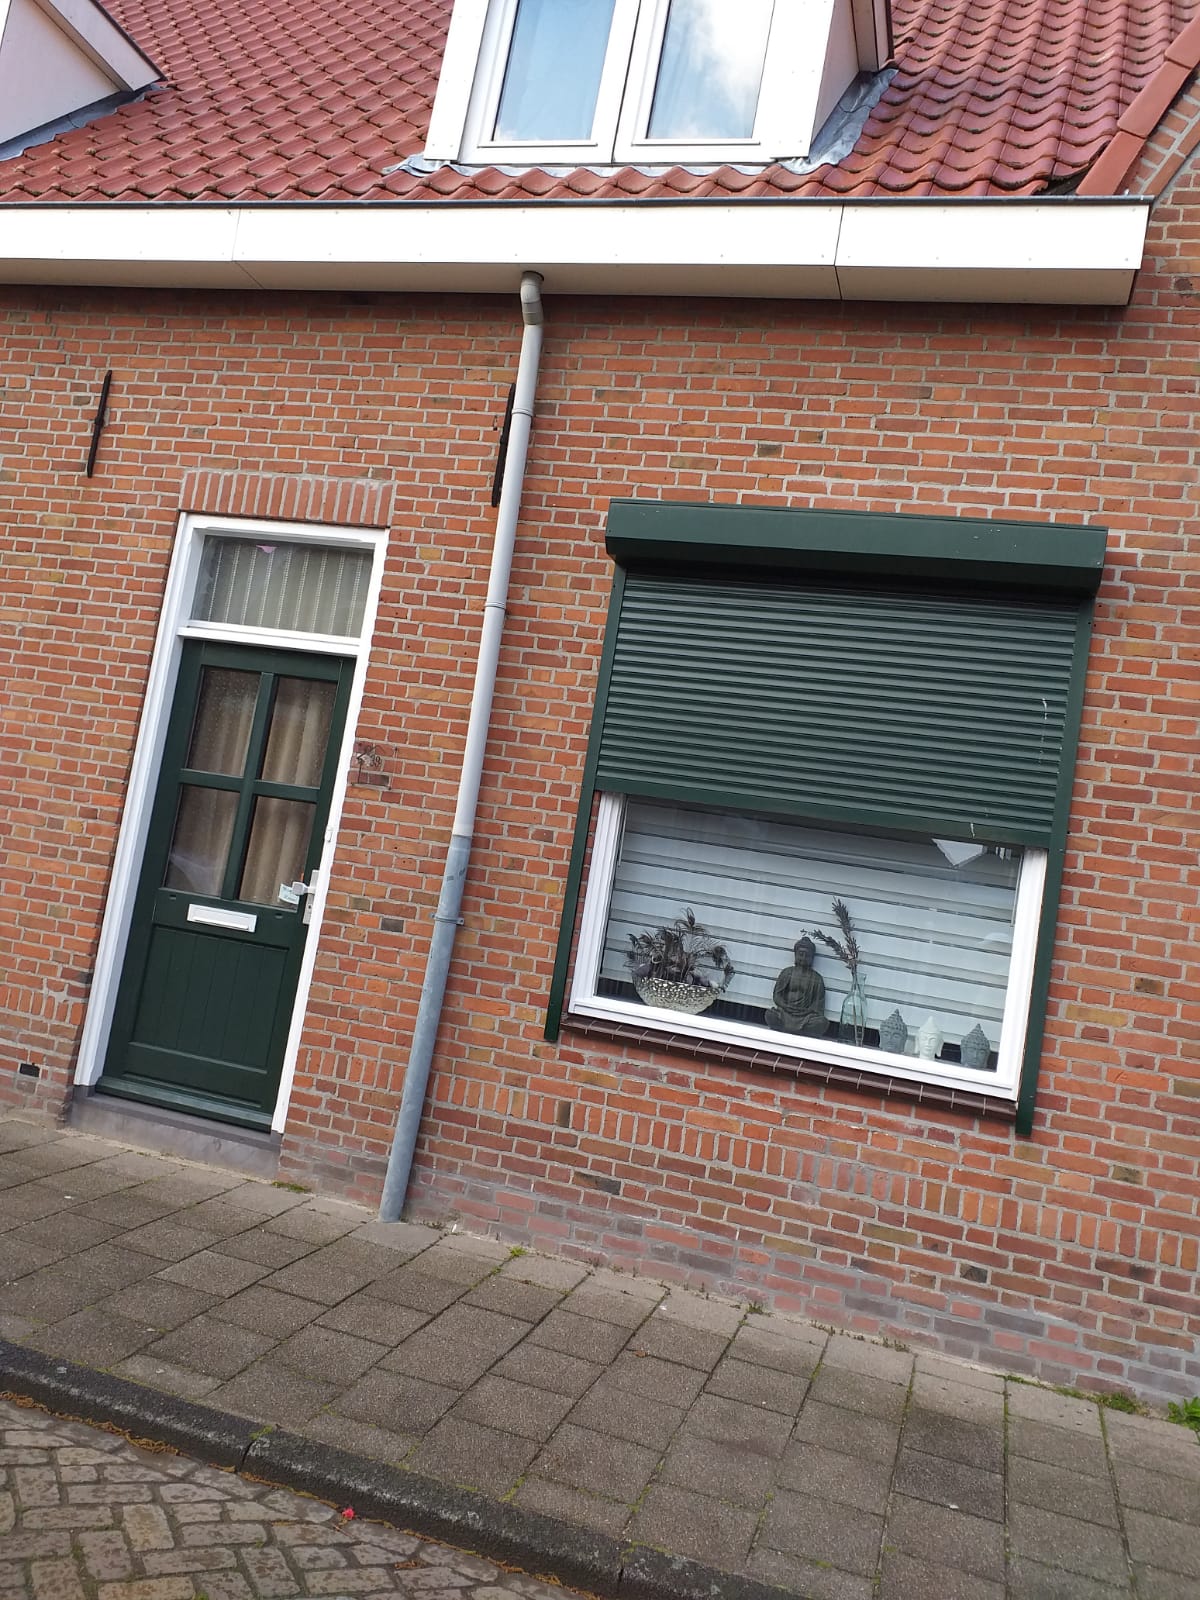 Koningstraat 39, 4941 GT Raamsdonksveer, Nederland